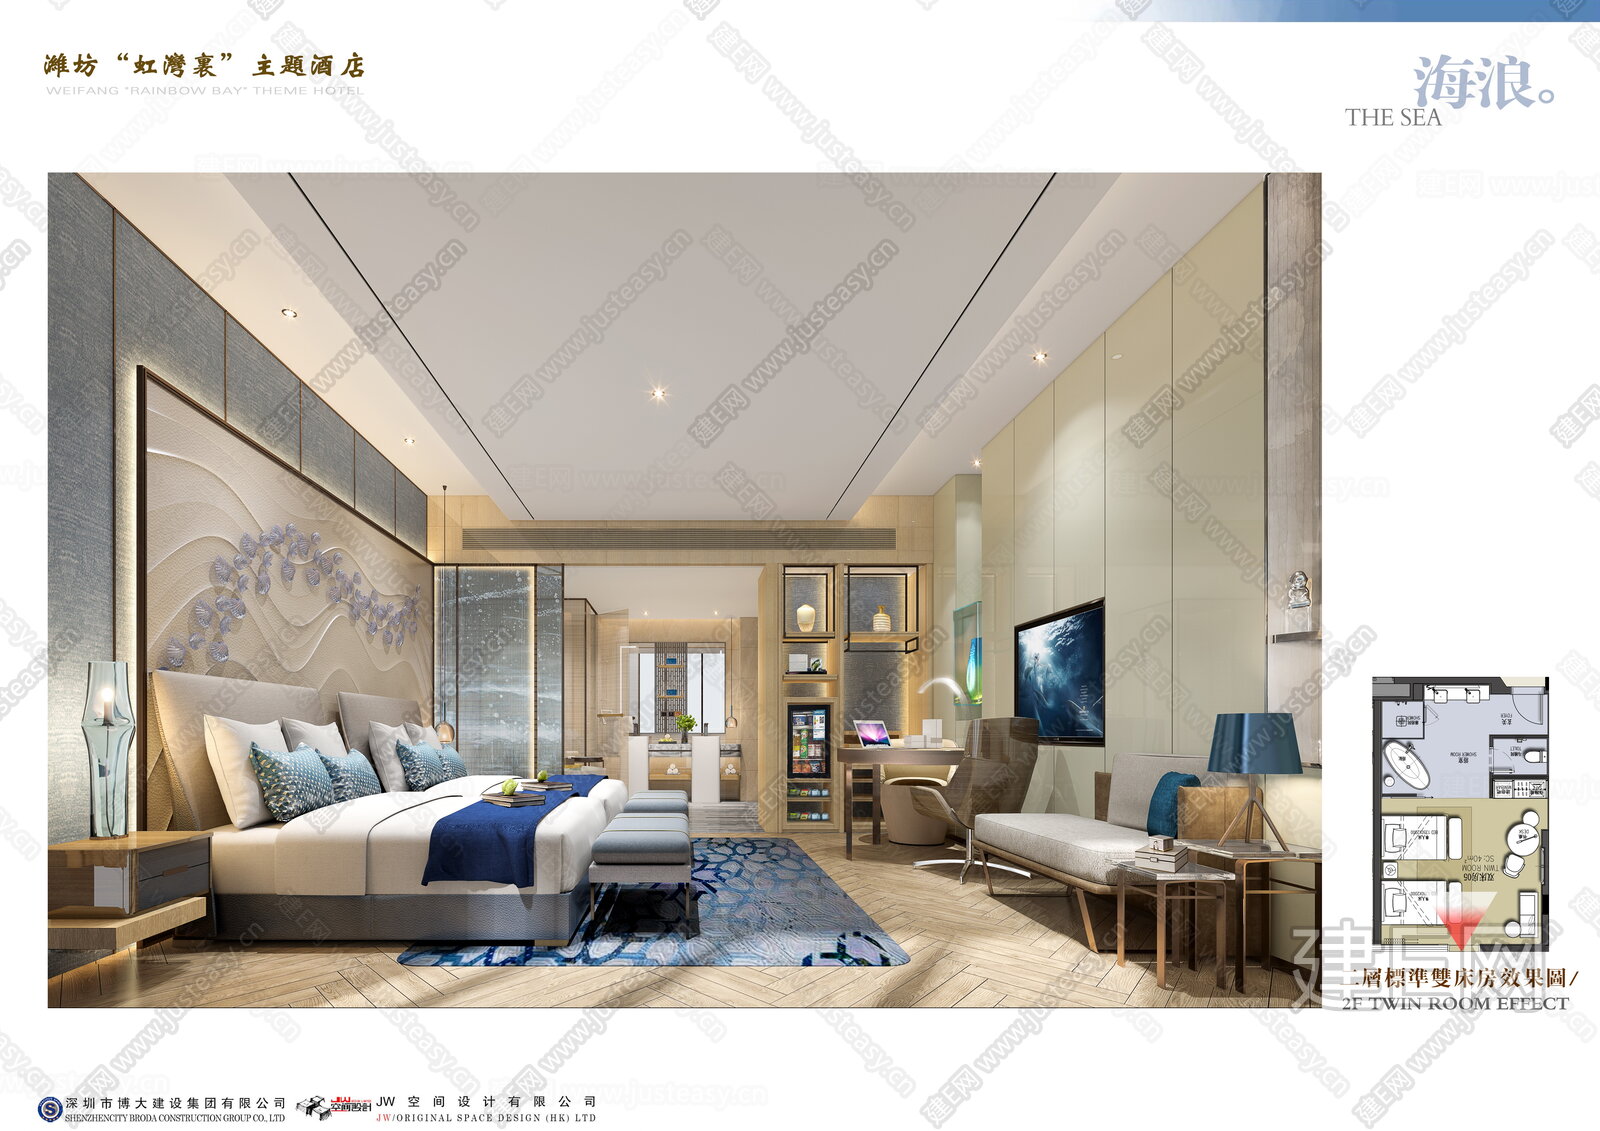 上海船酒店-亚太室内设计精英邀请赛|亚太室内设计大赛